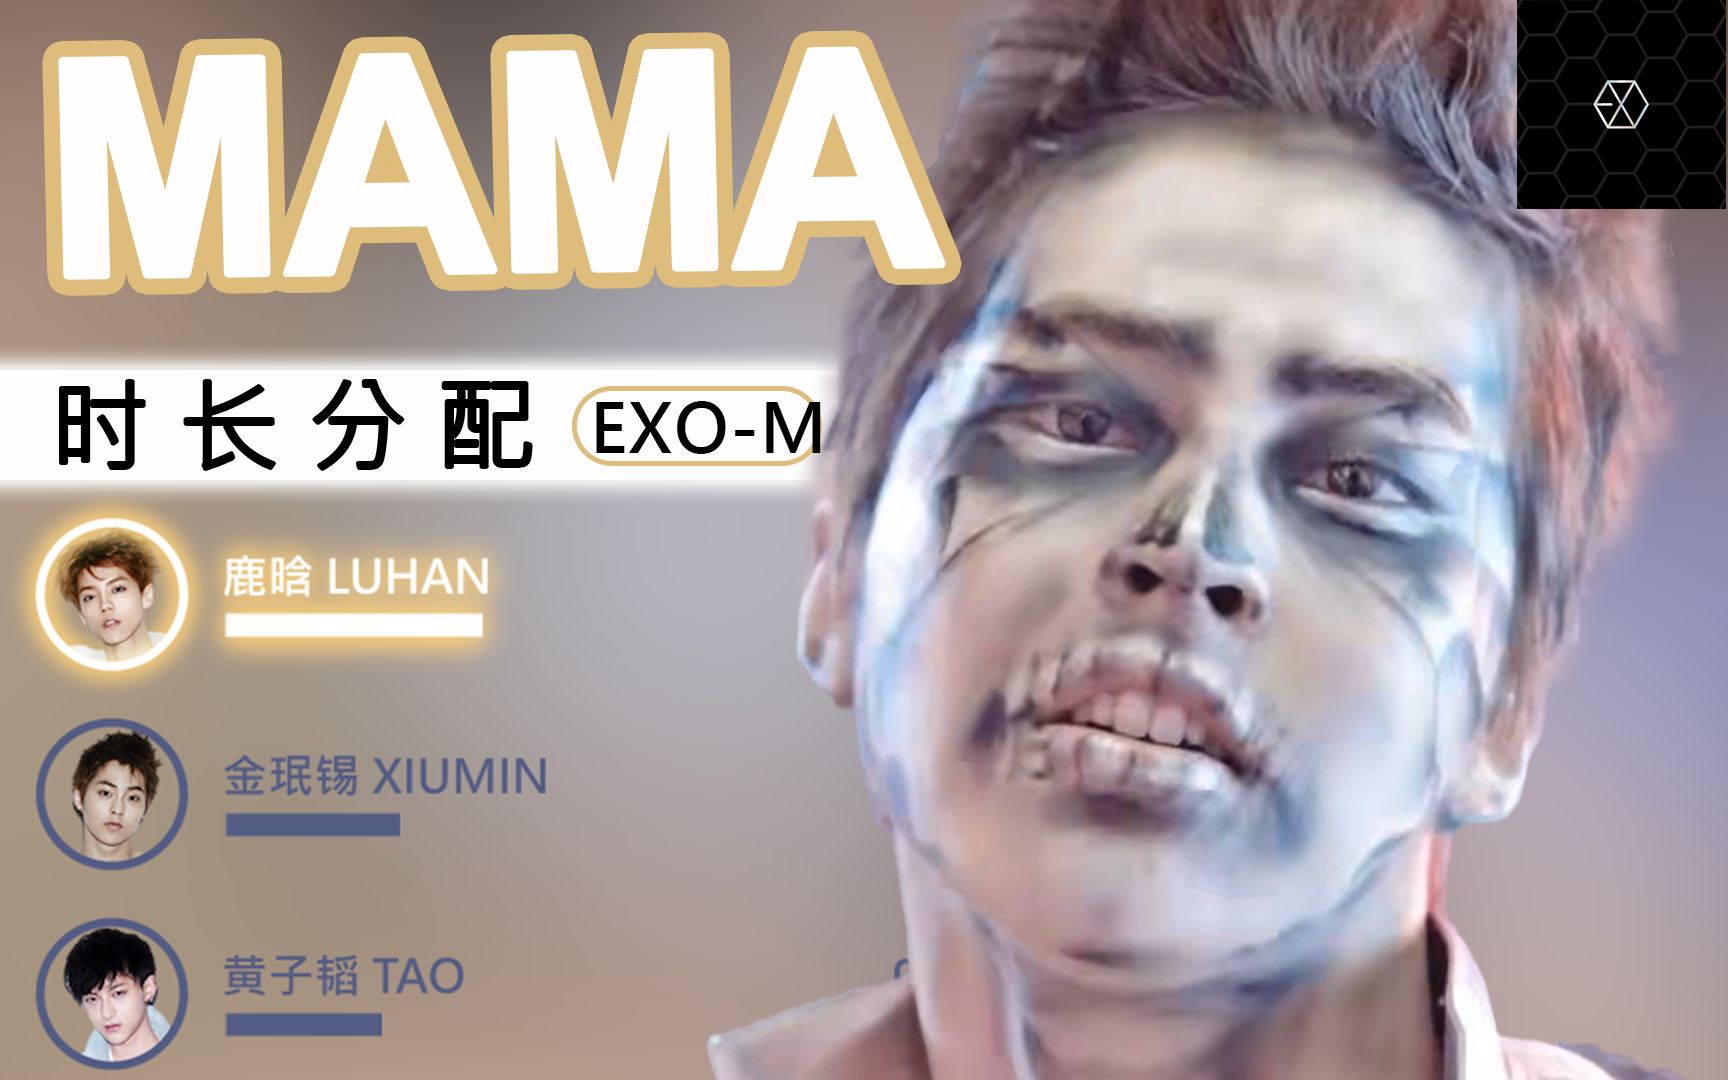 【时长分配】MAMA-EXO-M 中文版